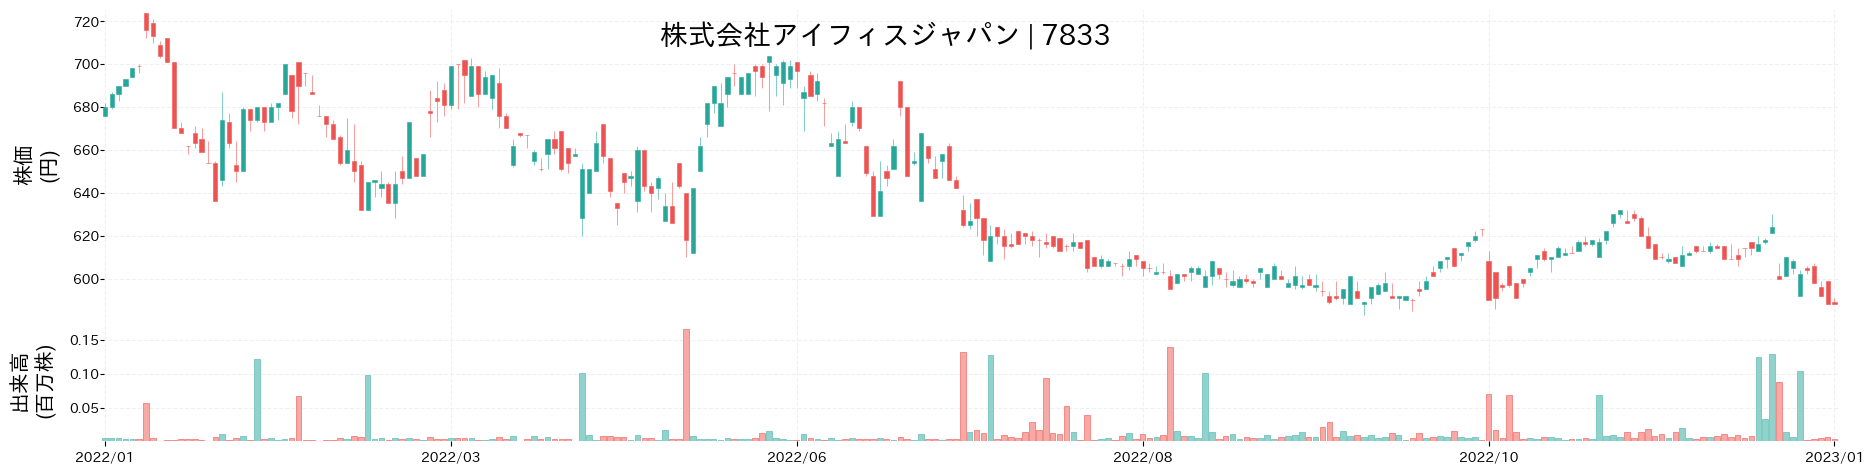 アイフィスジャパンの株価推移(2022)